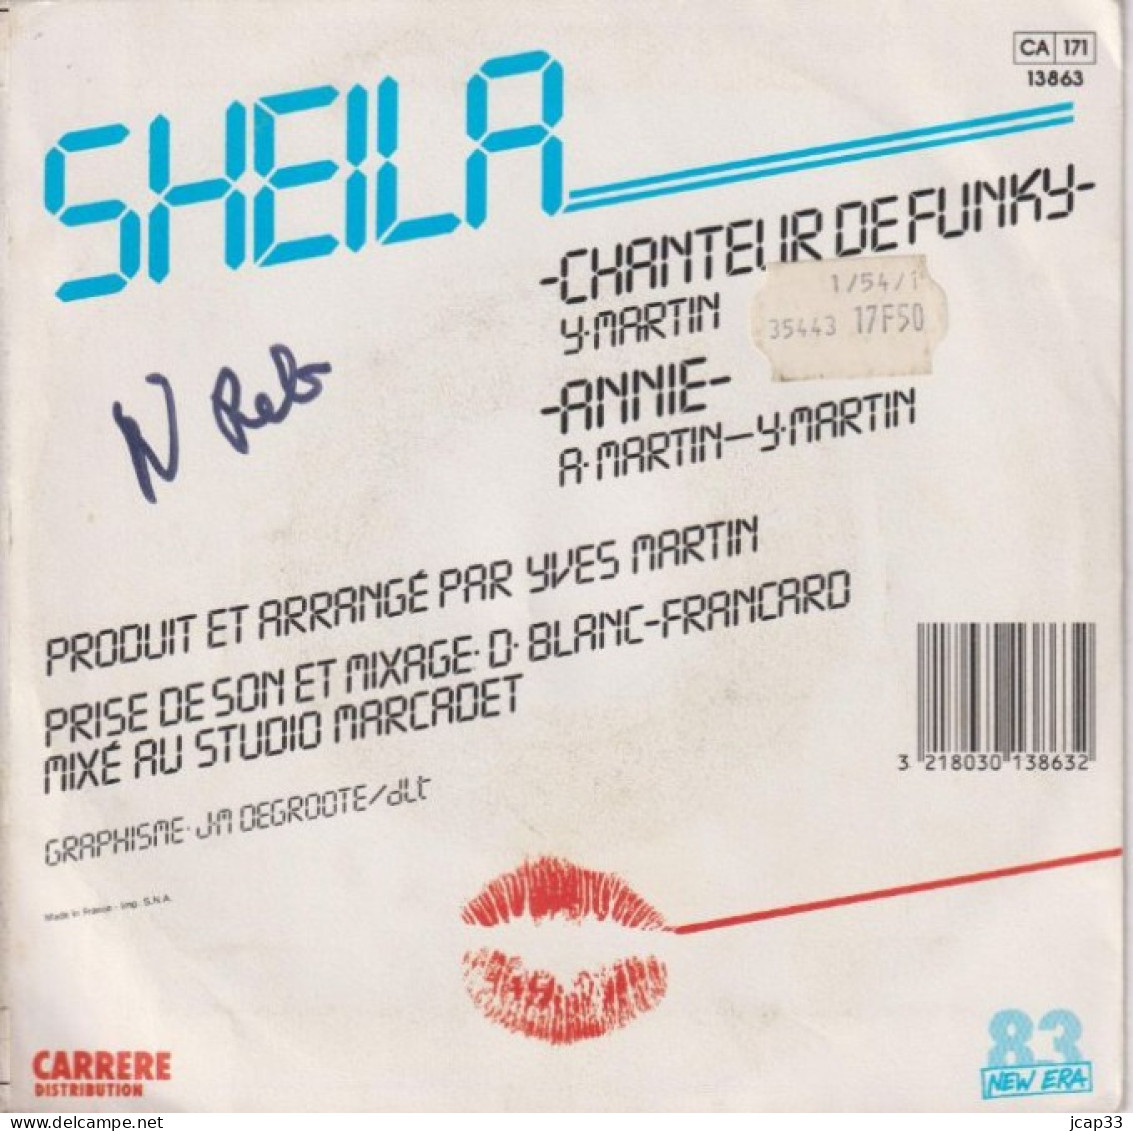 SHEILA  -  CHANTEUR DE FUNKY  -  ANNIE  -  1985  - - Autres - Musique Française